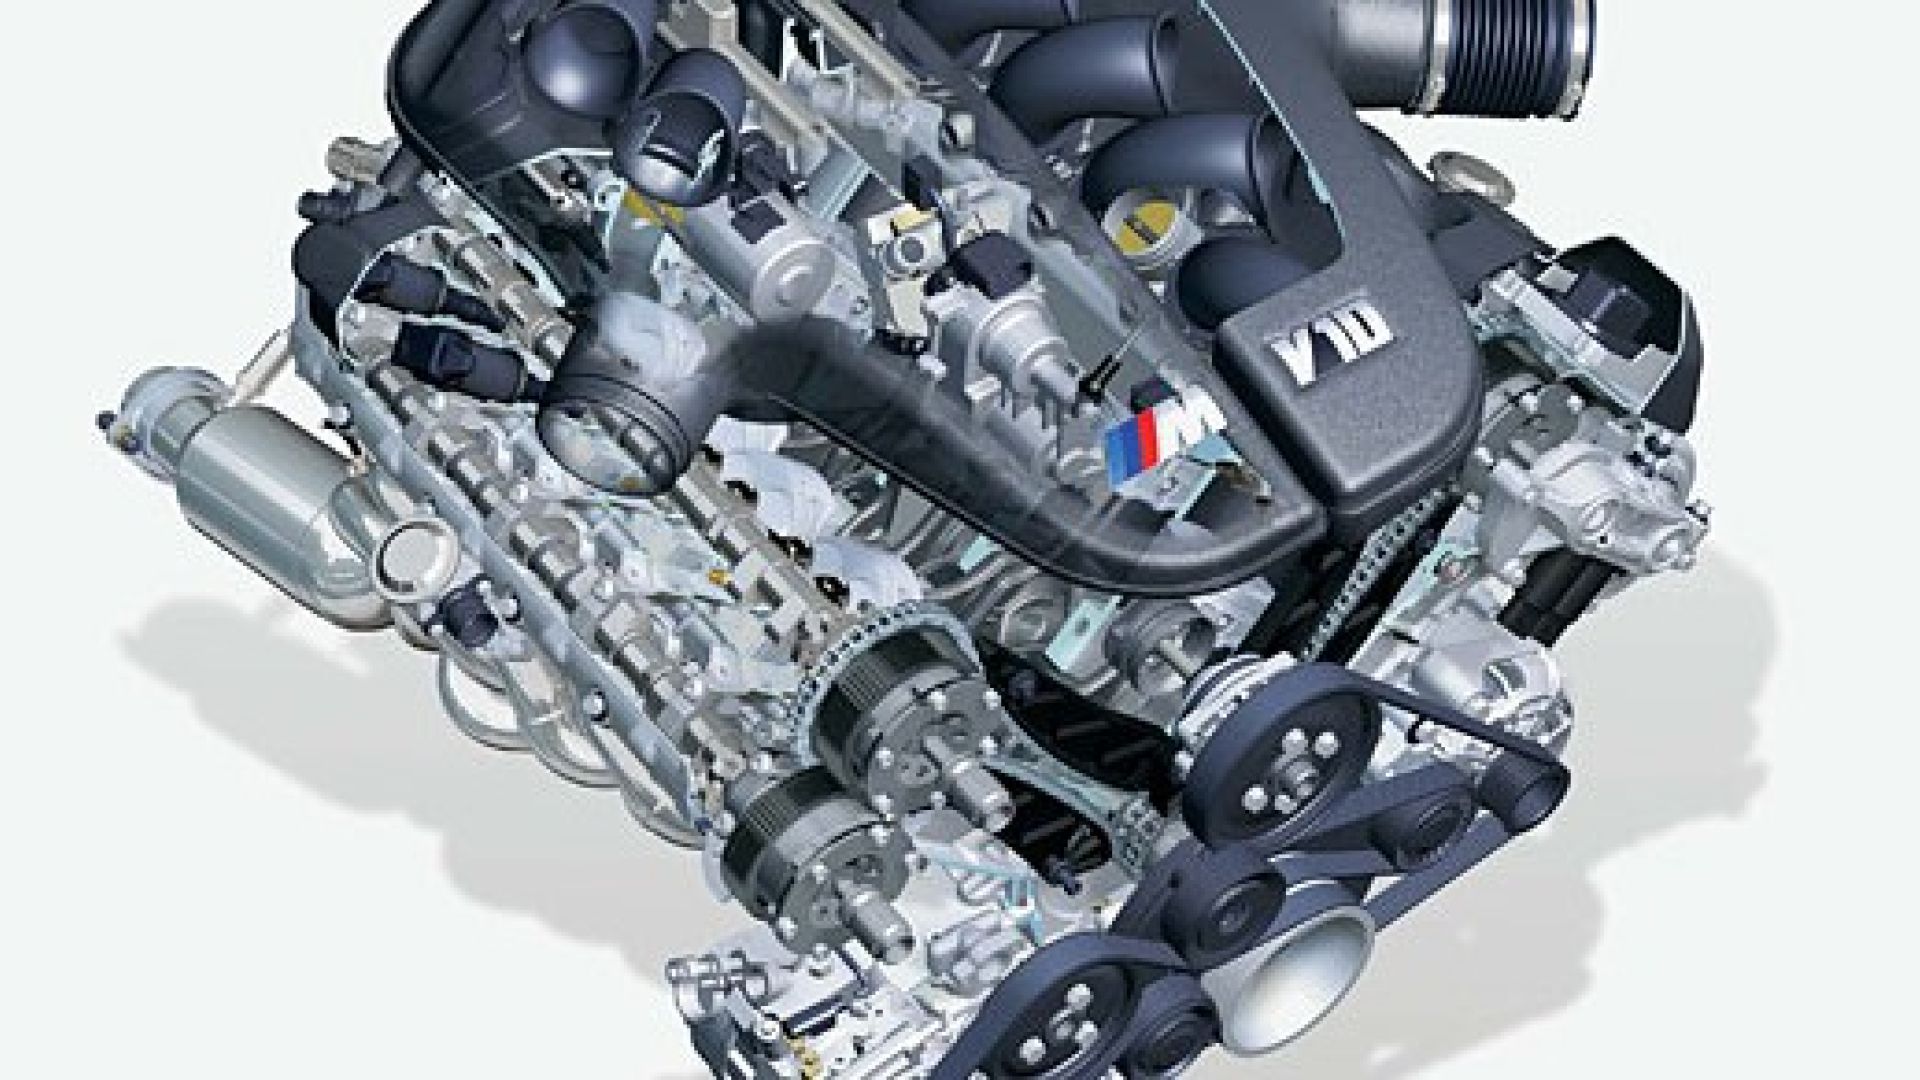 Мотор м 5. БМВ м5 е60 мотор v10. БМВ м5 е60 двигатель v10. BMW s85 v10. V10 BMW m5 мотор.